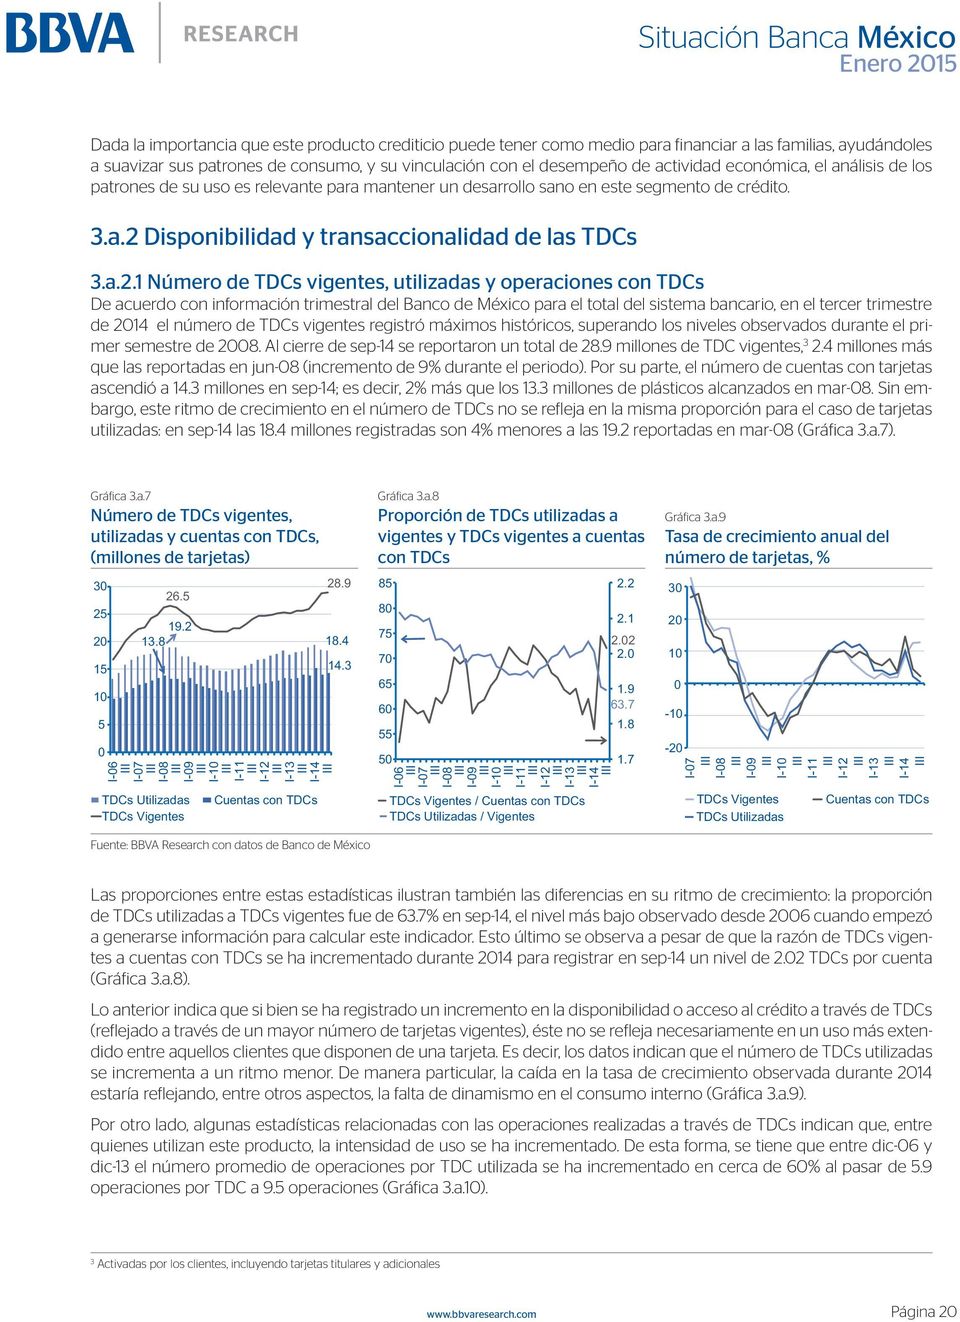 Disponibilidad y transaccionalidad de las TDCs 3.a.2.